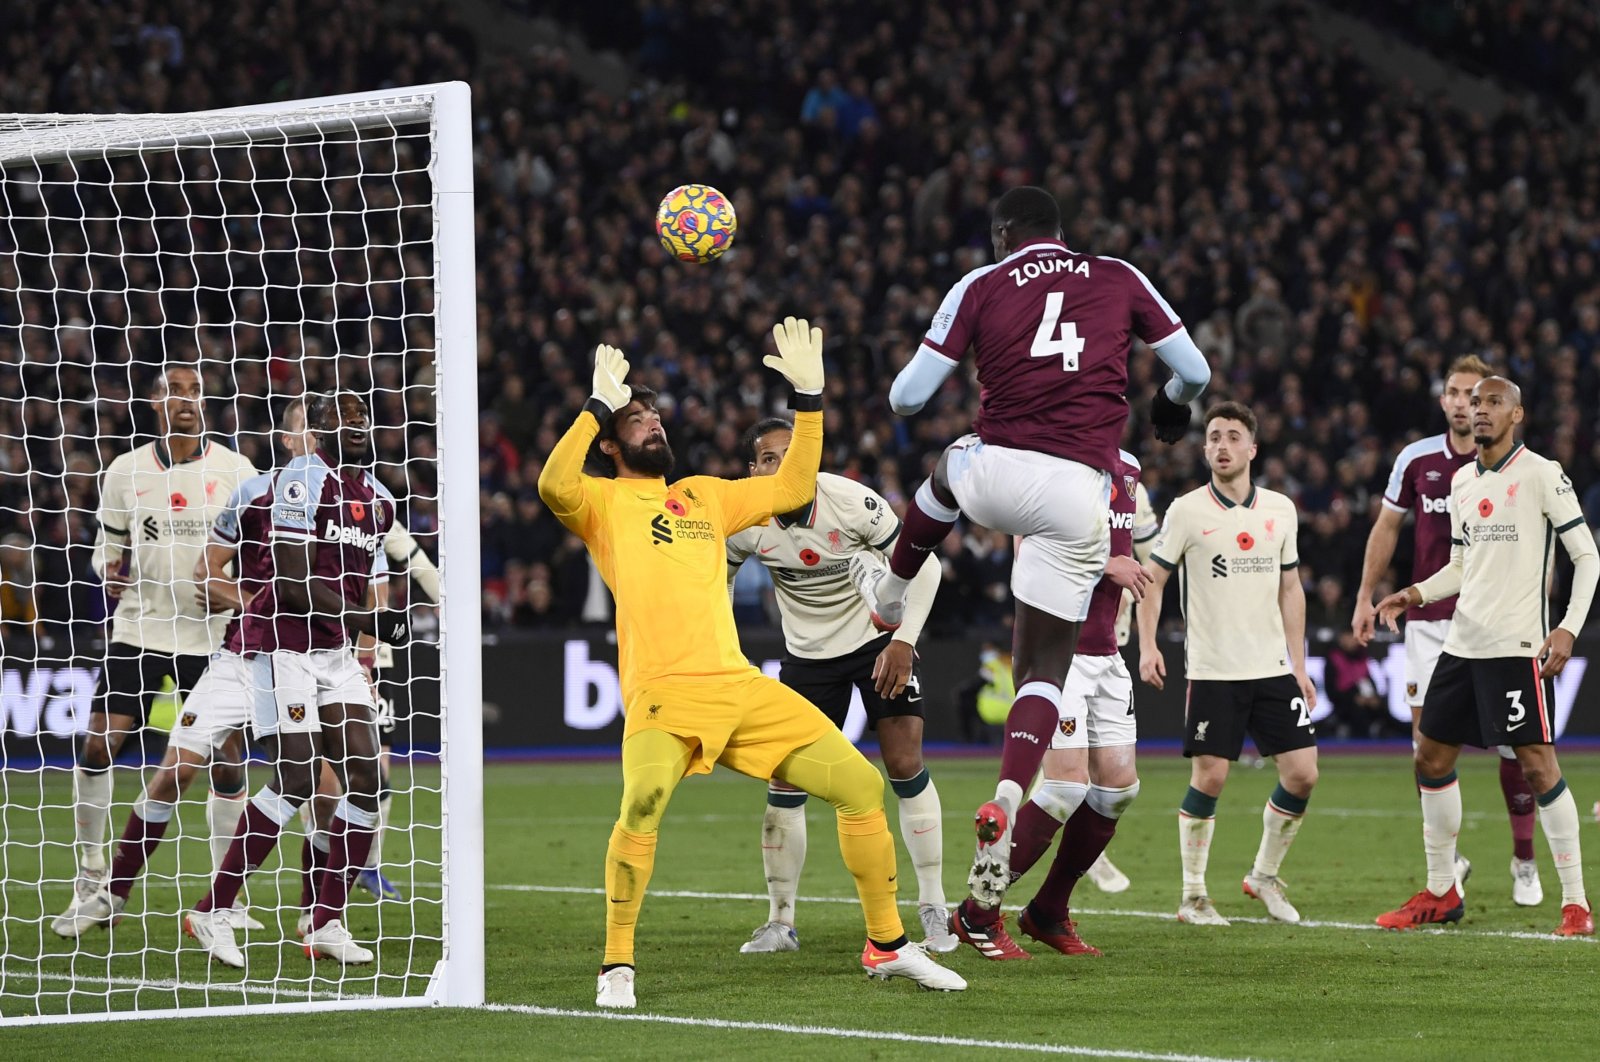 West Ham United's Kurt Zouma scores in a Premier League game against Liverpool, London Stadium, London, England, Nov. 7, 2021. (Reuters Photo)